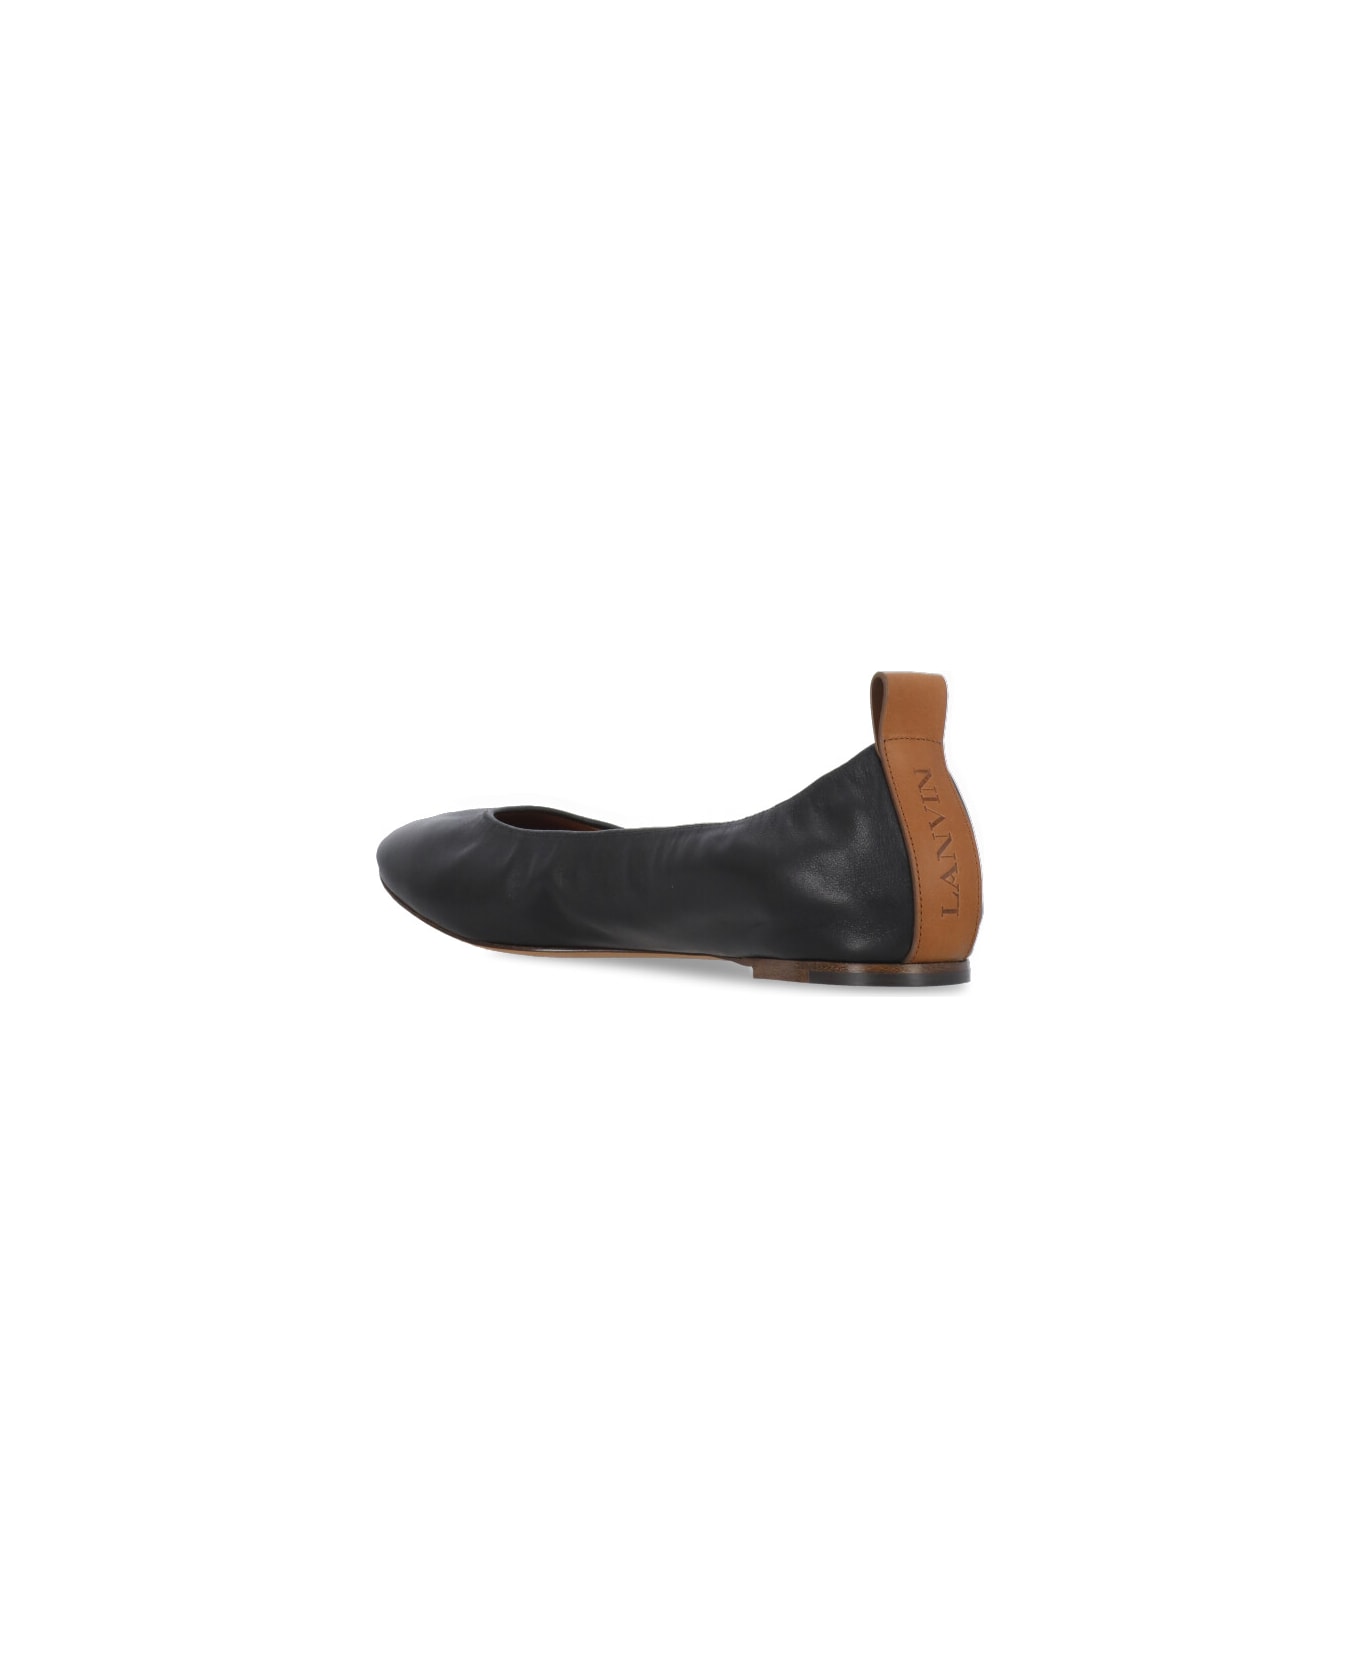 Lanvin Leather Ballet Shoes - Black